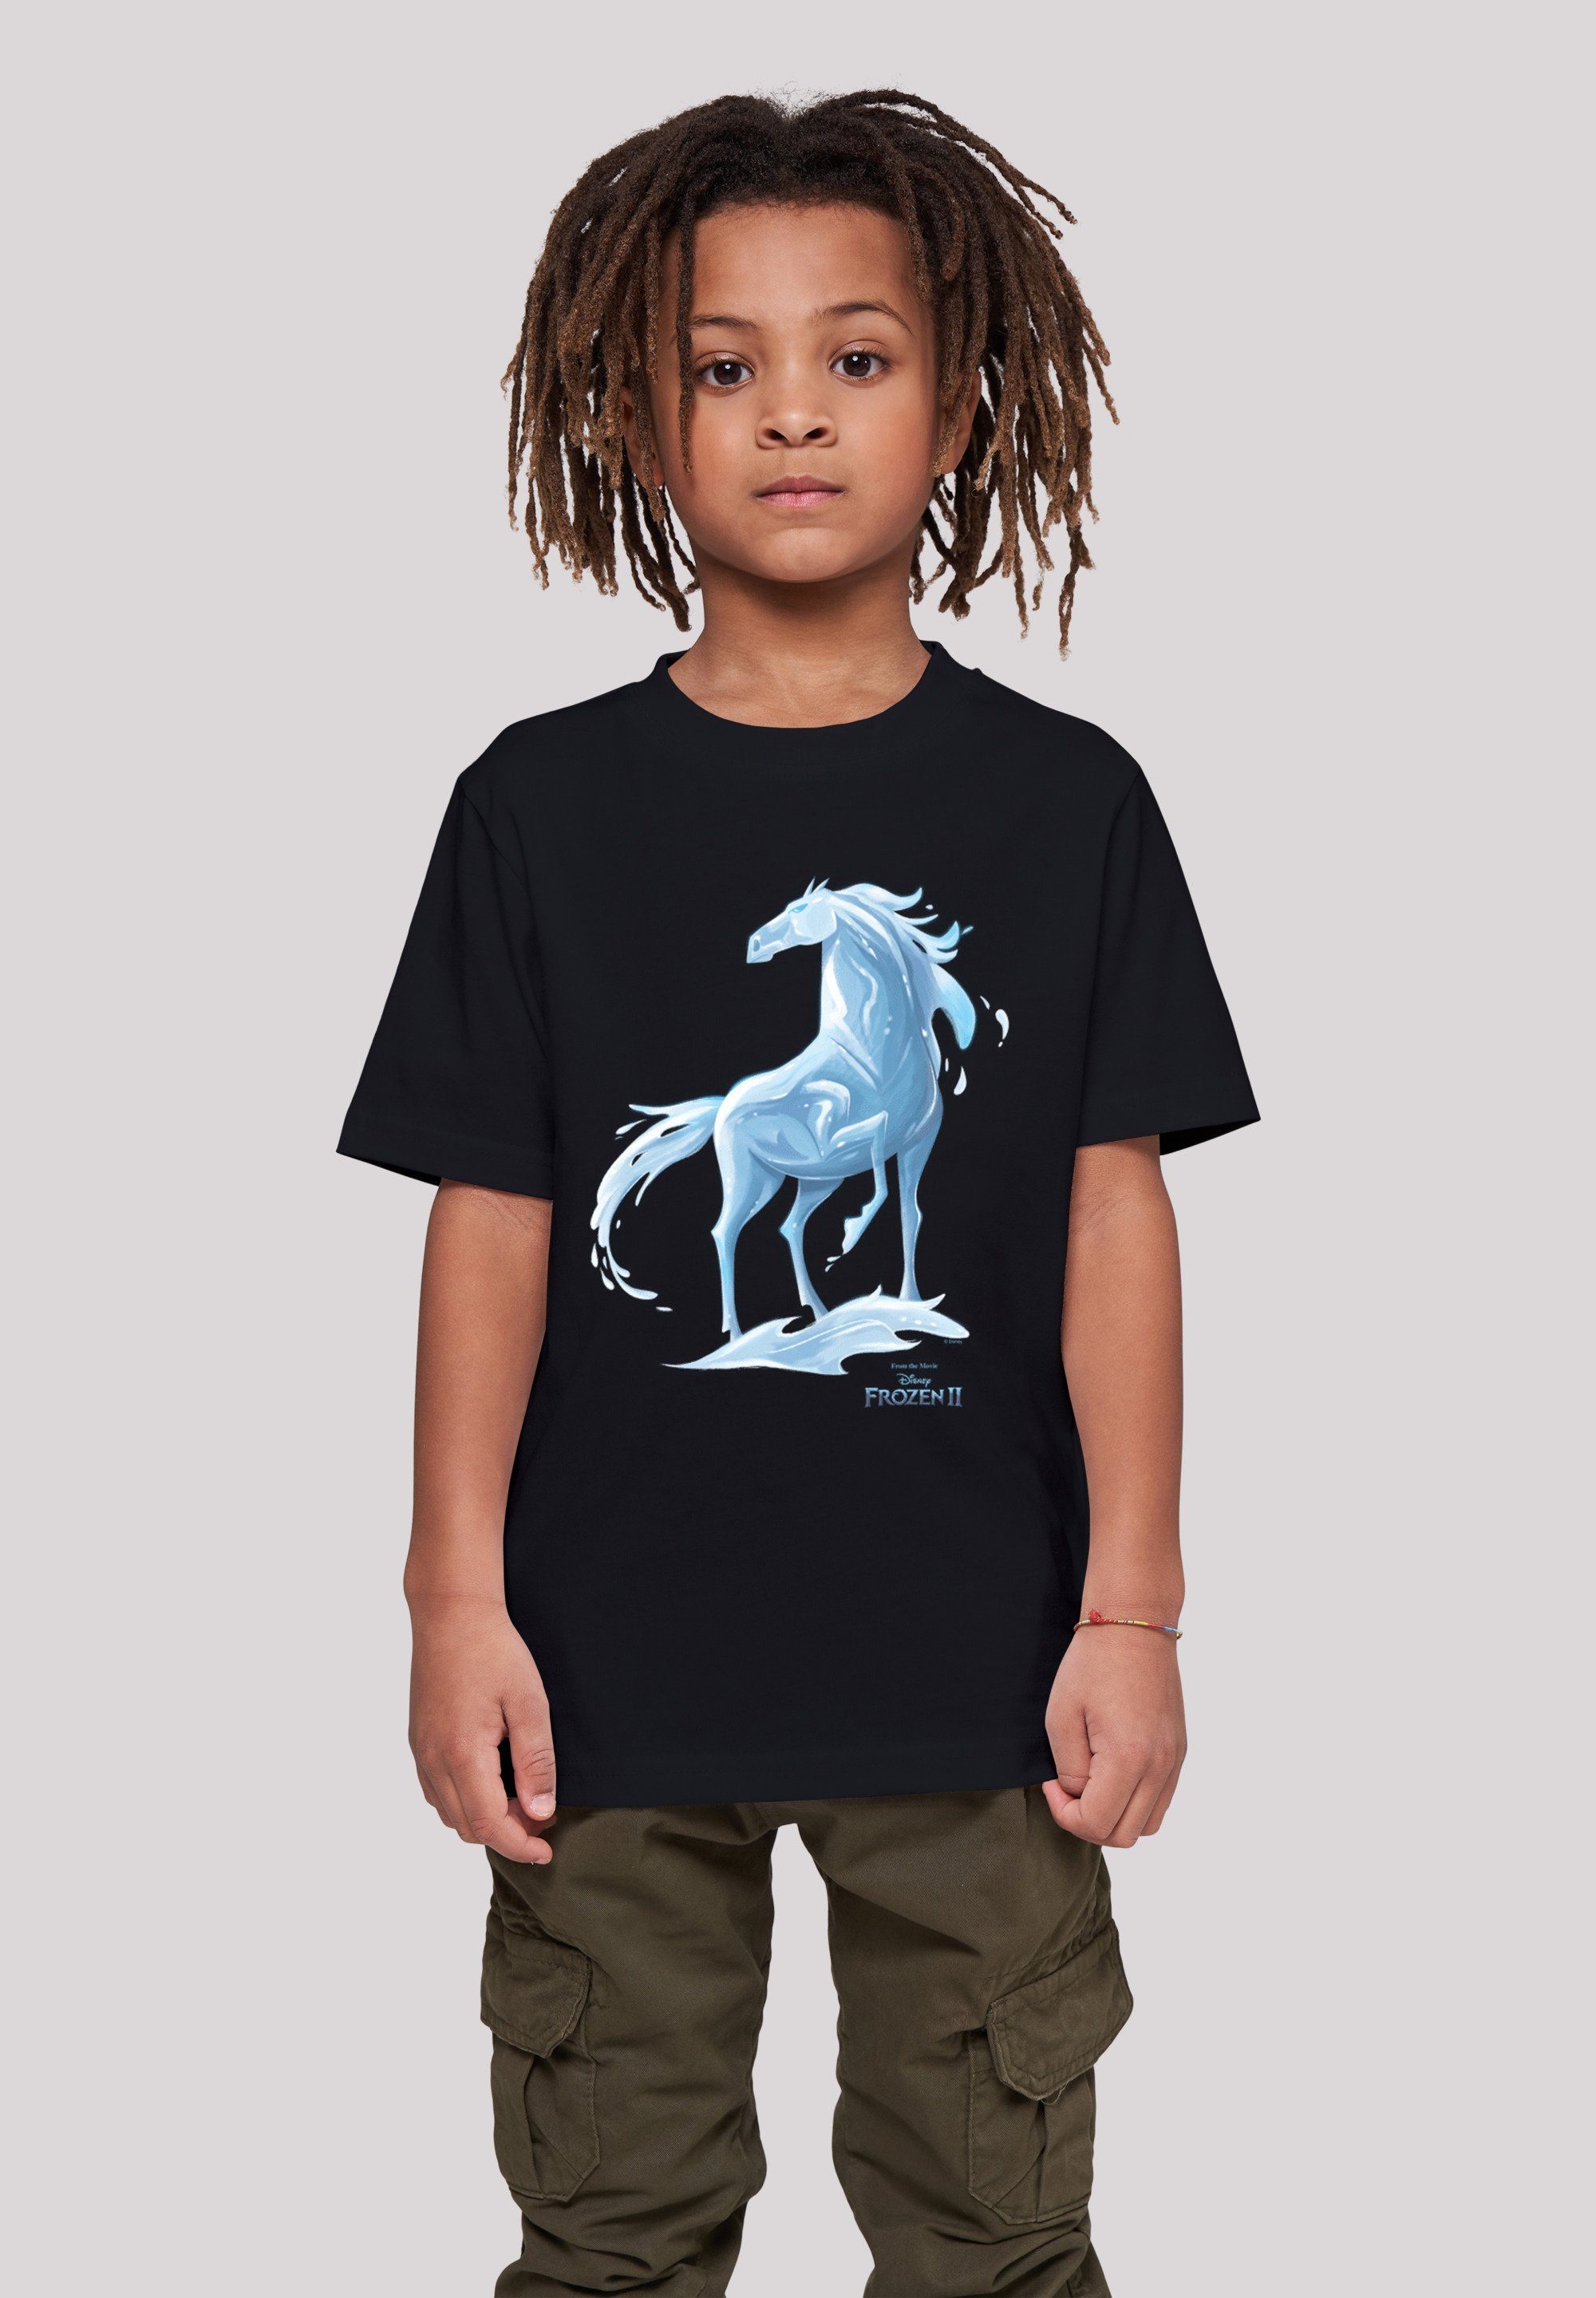 Nokk Unisex Merch,Jungen,Mädchen,Bedruckt F4NT4STIC Pferd Disney T-Shirt 2 Frozen Kinder,Premium Wassergeist